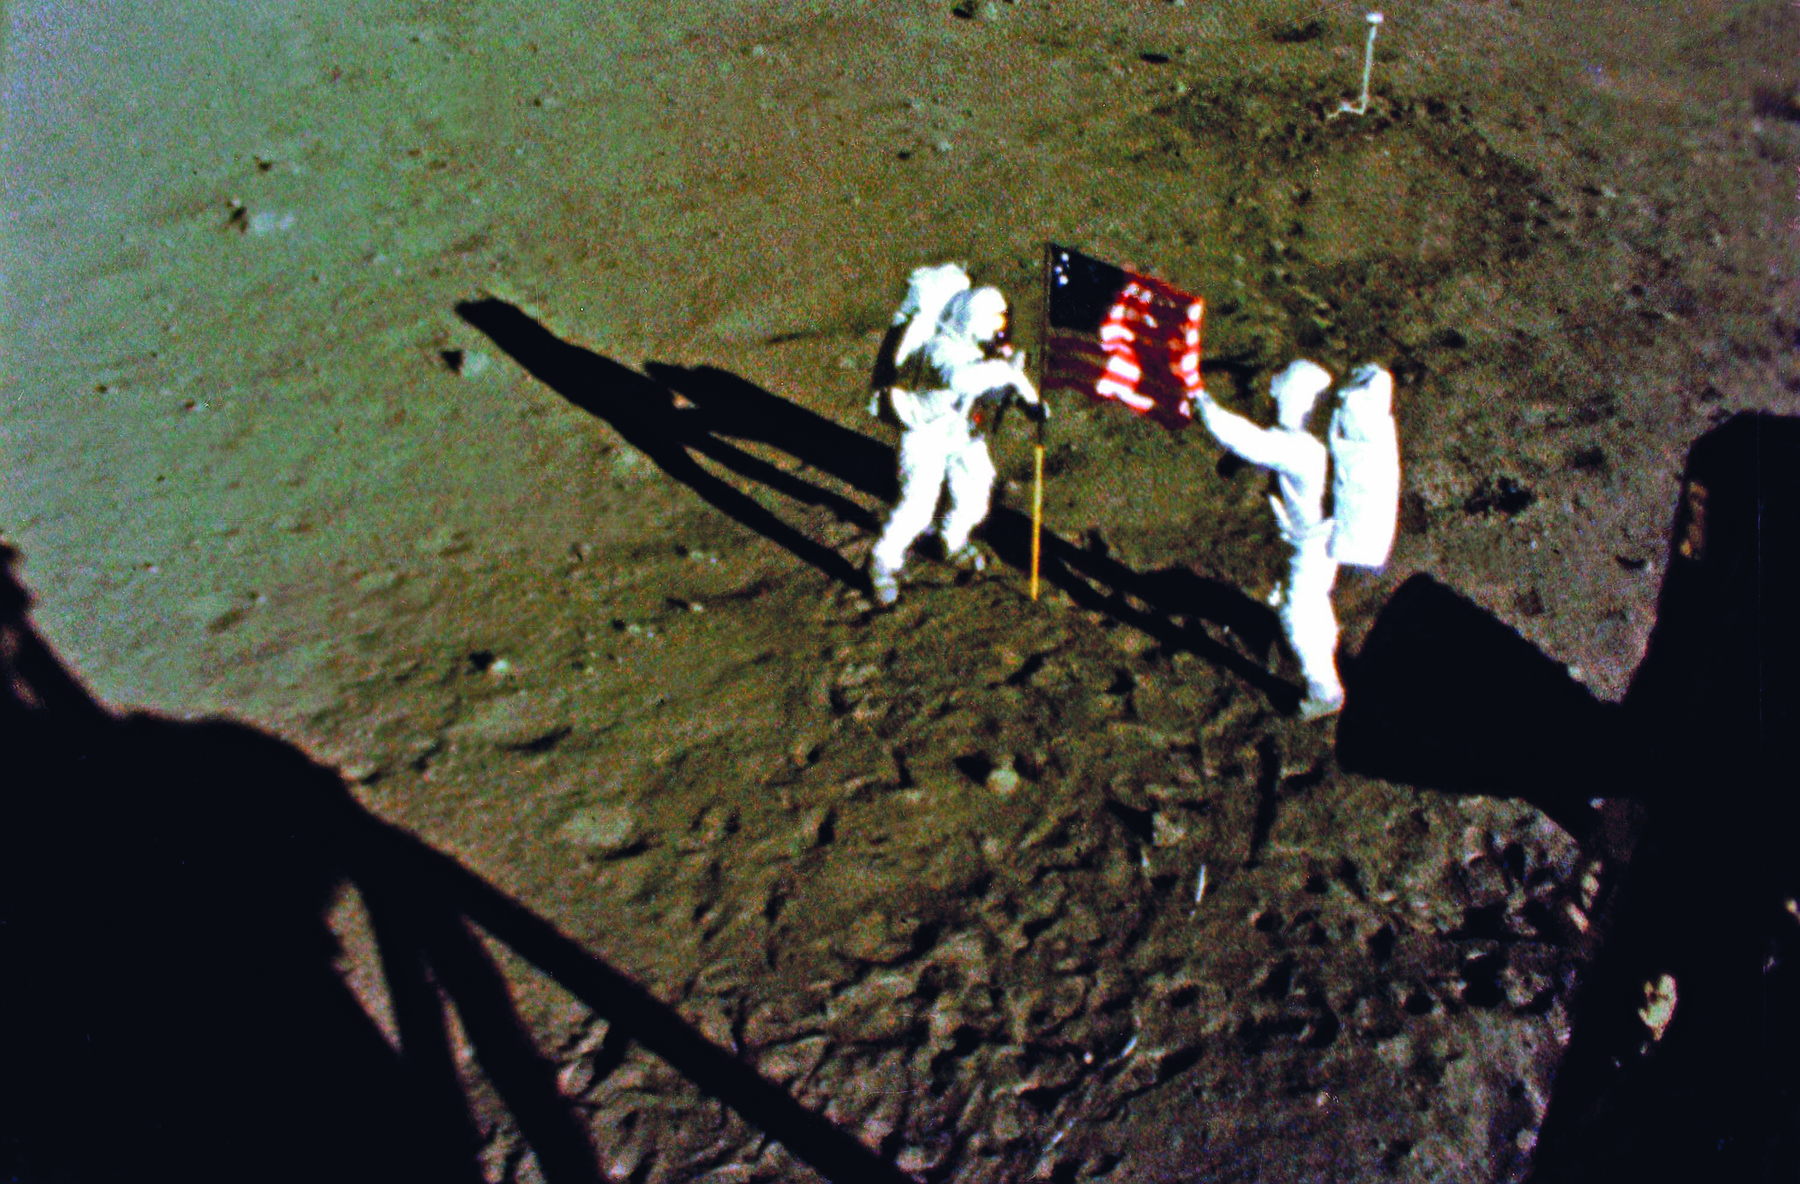 Fotografia. Duas pessoas vestindo trajes de astronautas, de coloração branca, cobrindo todas as partes de seus corpos e capacetes. Estão em pé, sobre um solo terroso e acinzentado, e entre eles há uma haste vertical com uma bandeira dos Estados Unidos da América.